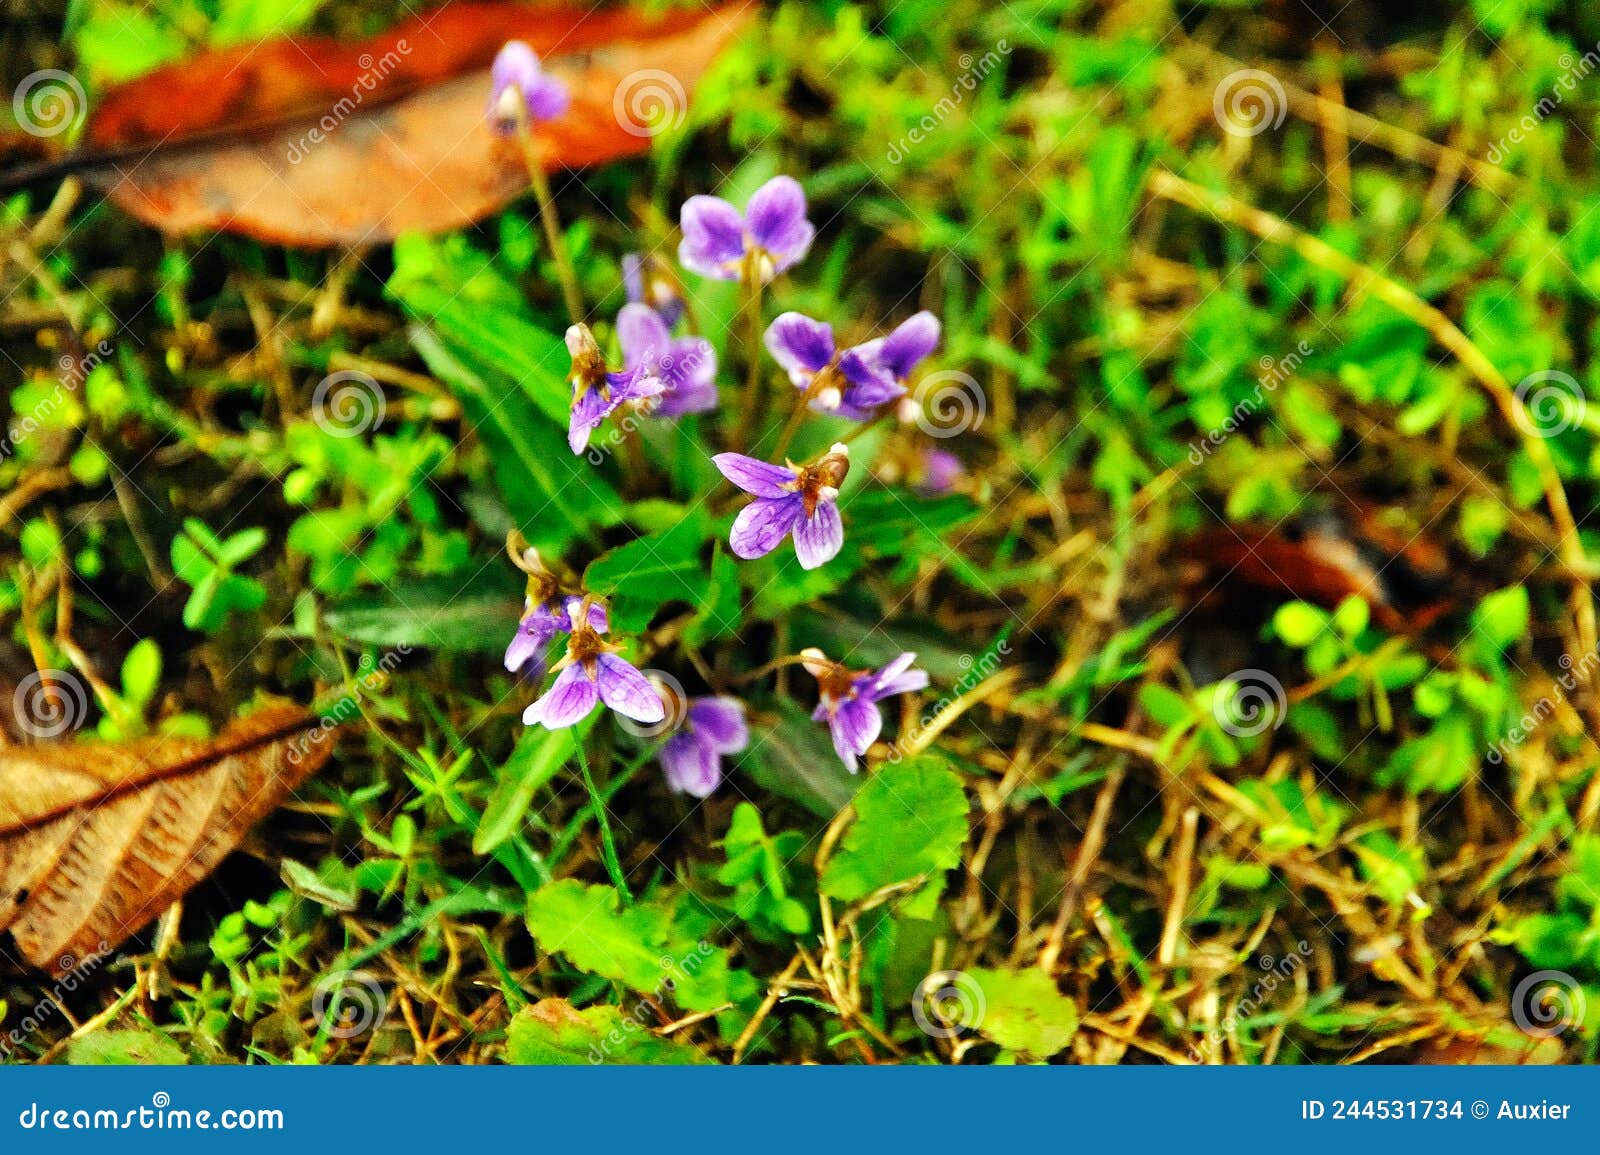 L'alto a De Petites Fleurs Violettes Avec Des Rayures Violettes Et Des  Pétales Obovés. Photo stock - Image du coeur, vert: 244531734